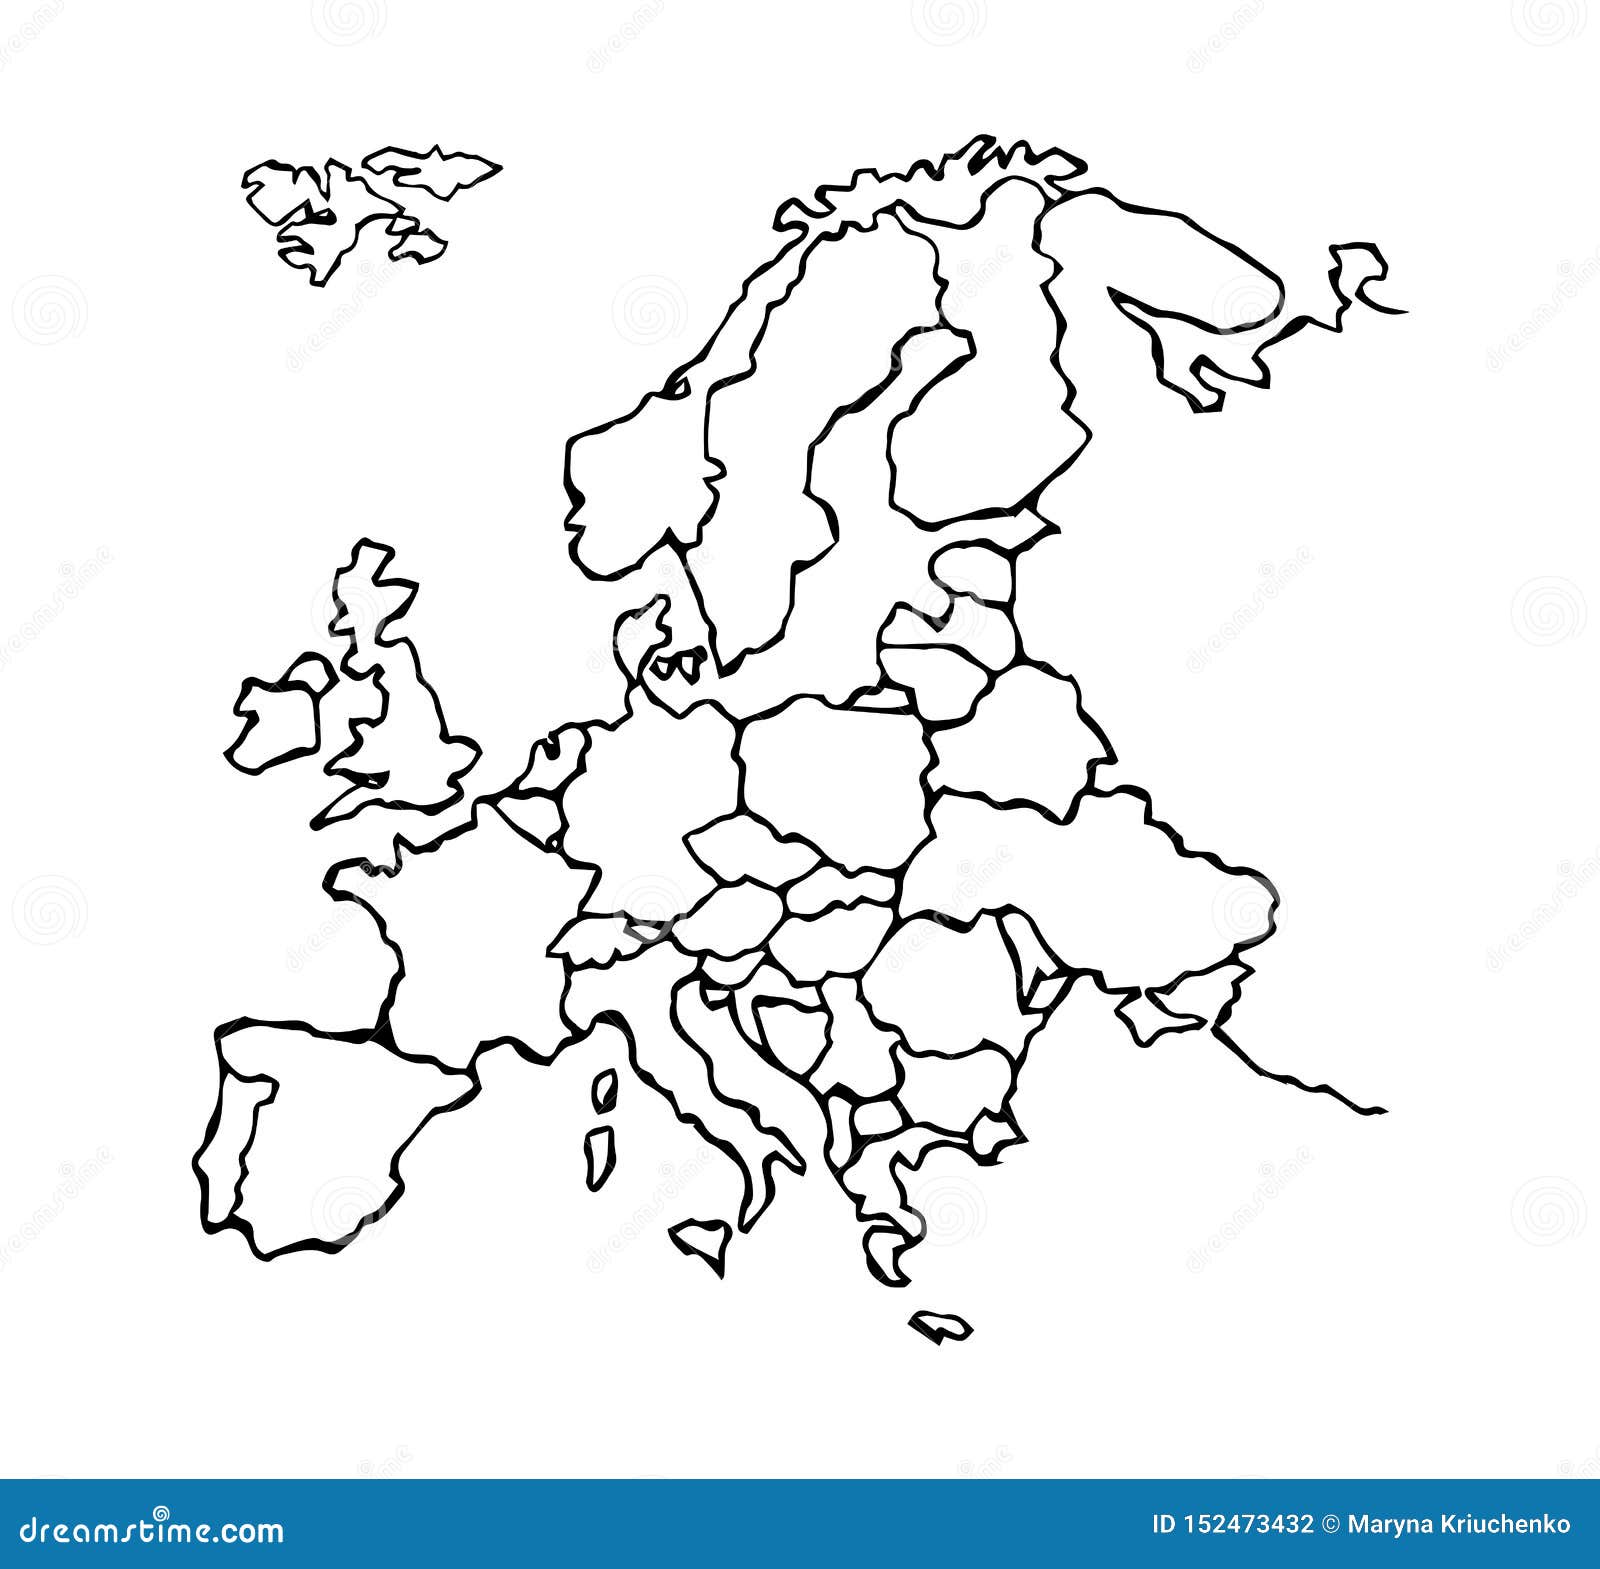 Государства Европы по контурам